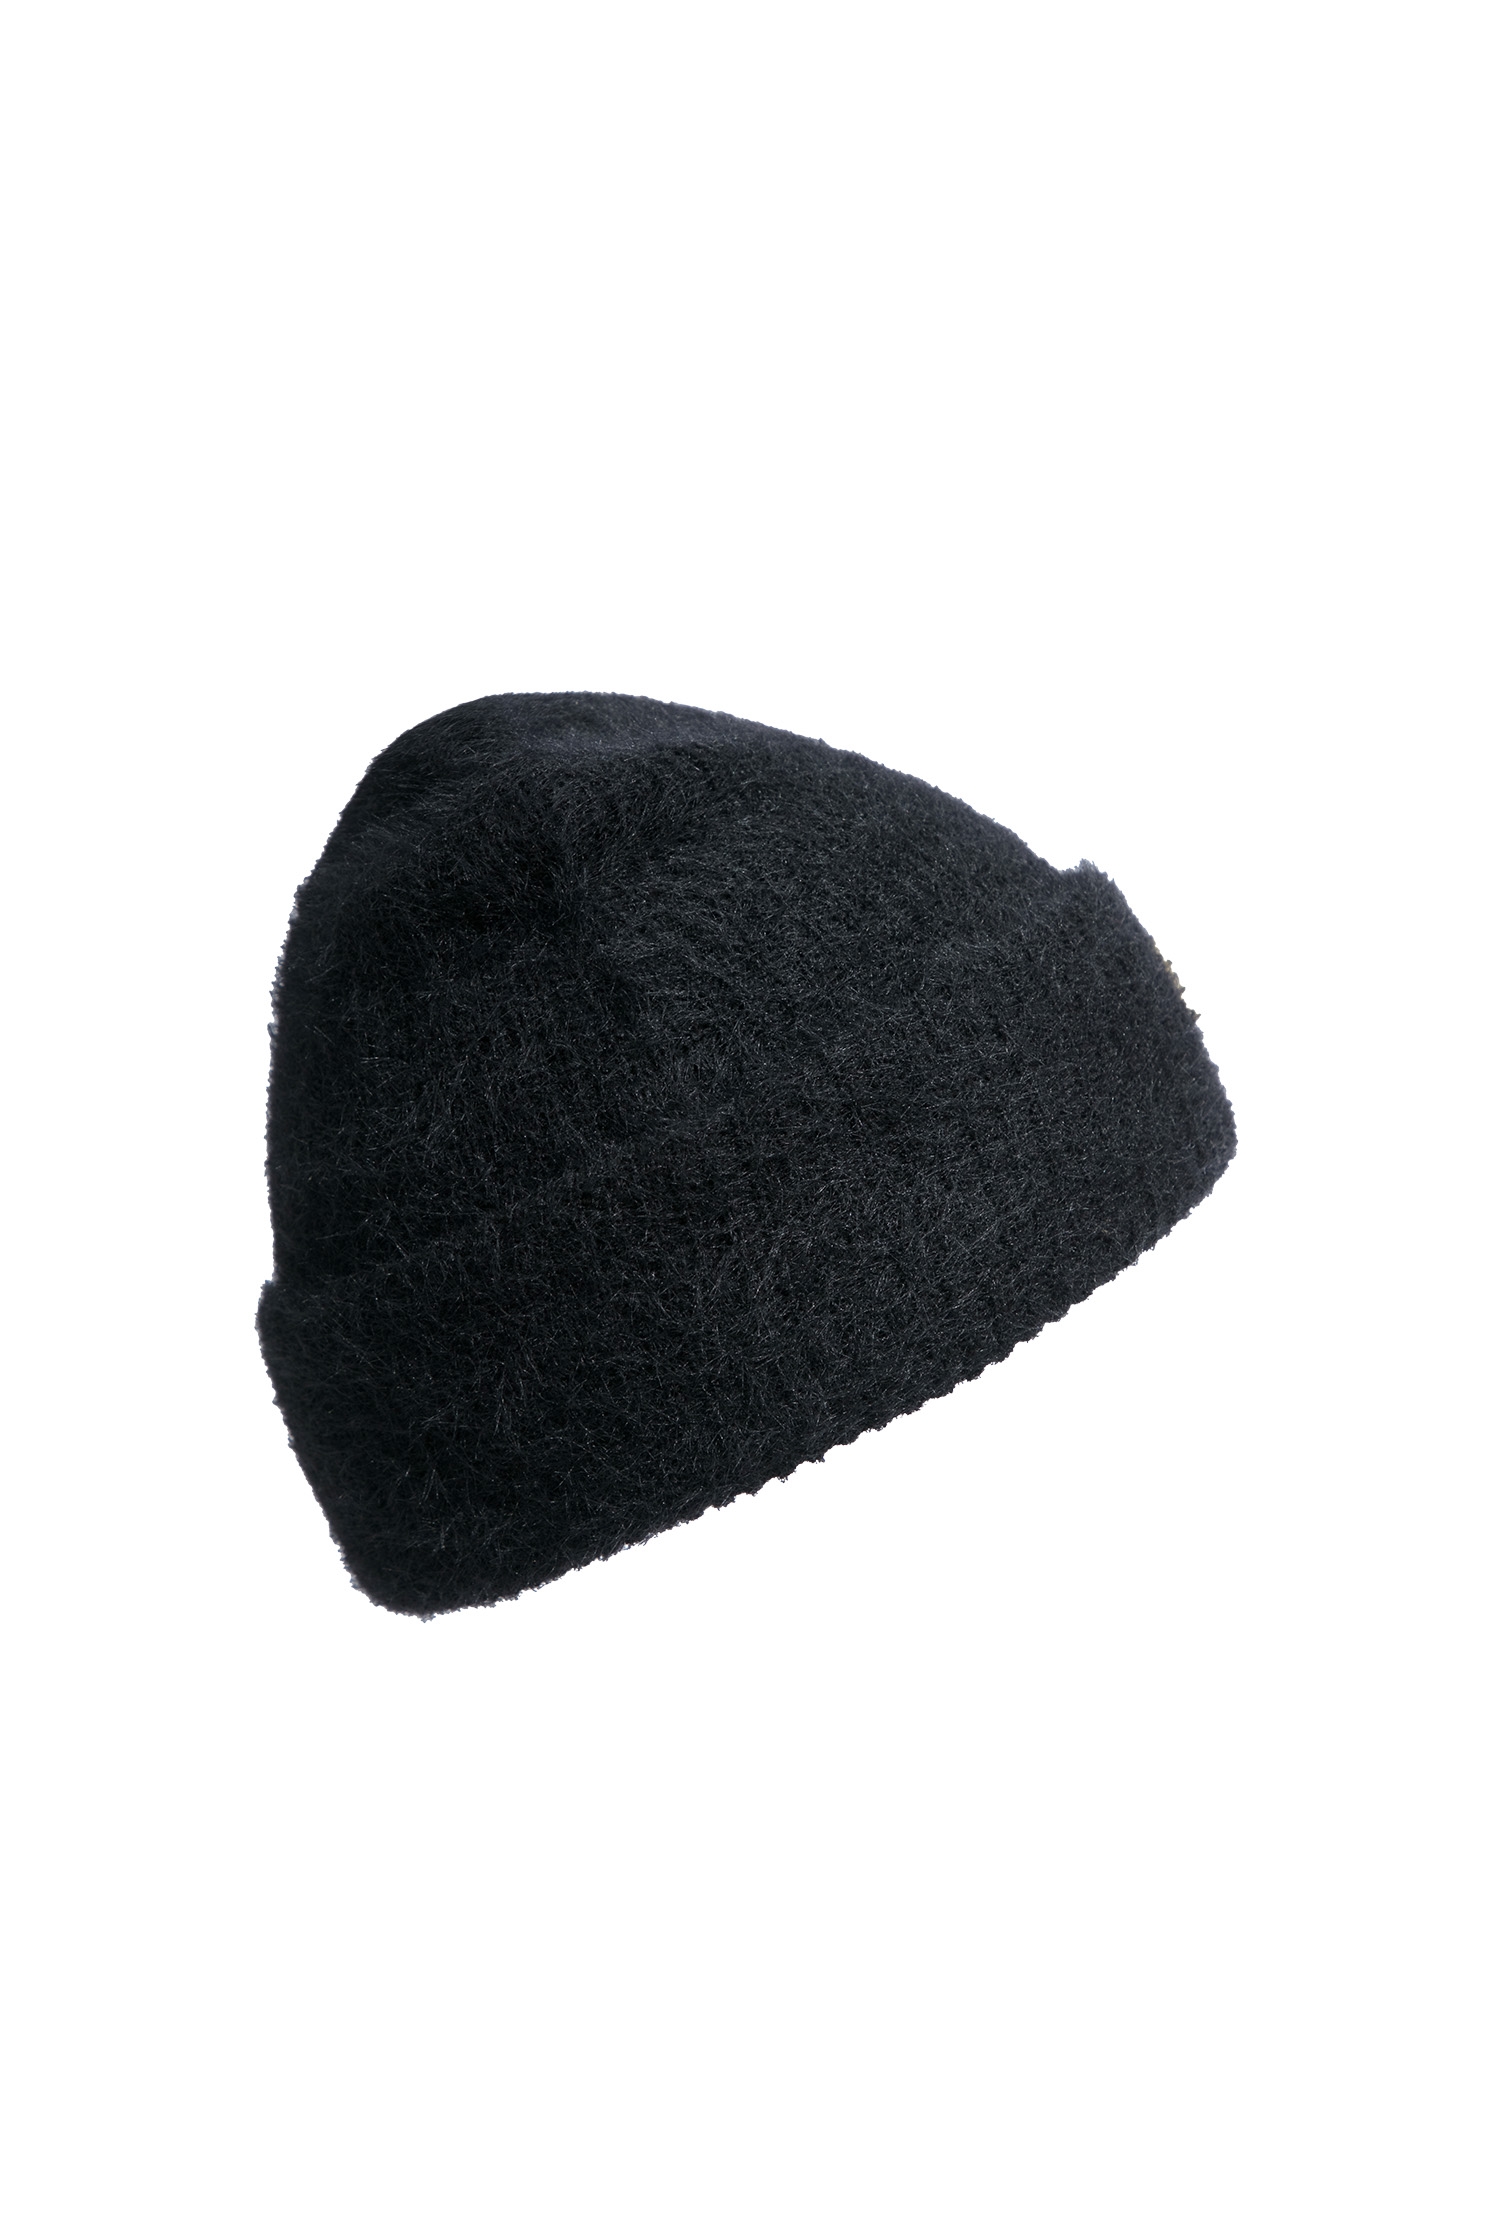 時尚單色經典毛帽時尚單色經典毛帽,帽子,秋冬穿搭